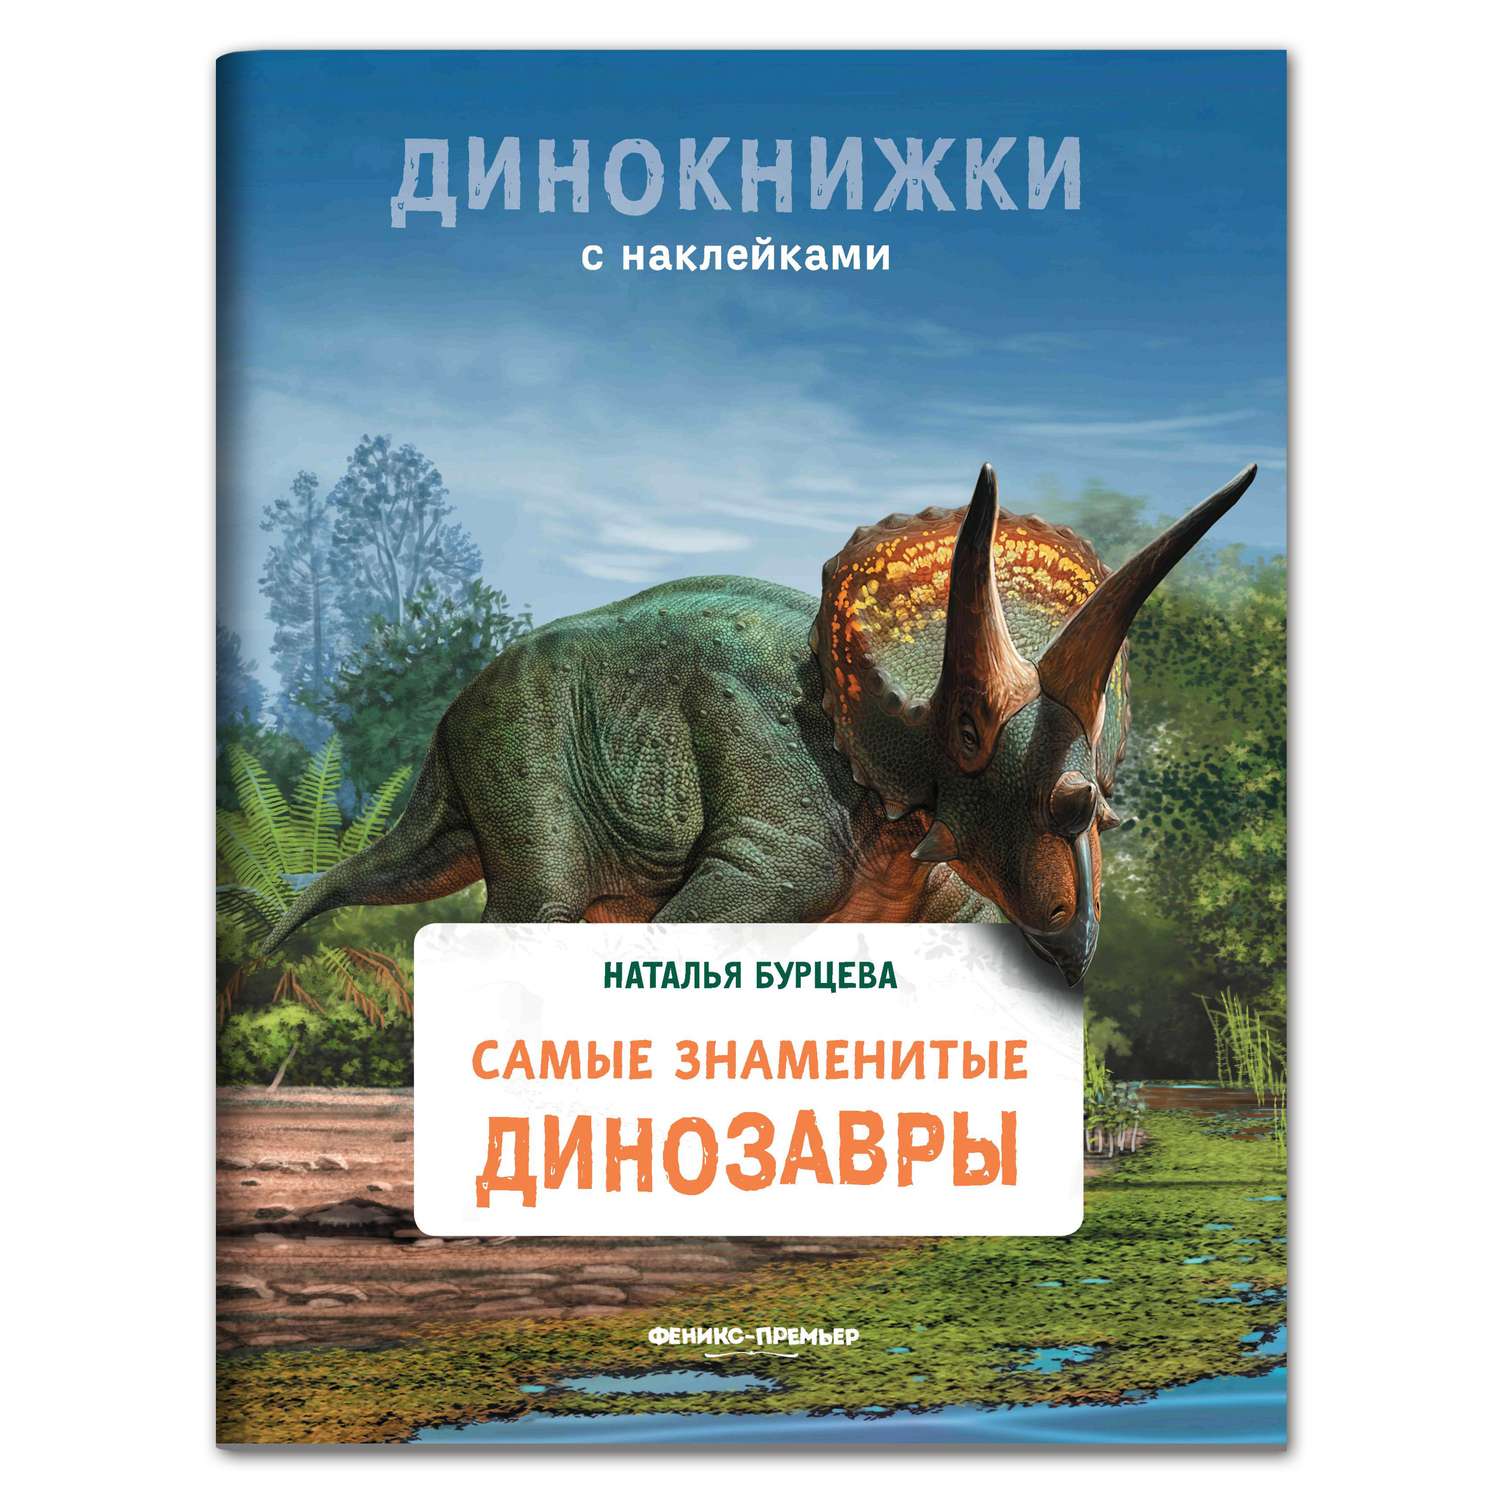 Книга Феникс Премьер Самые знаменитые динозавры. Динокнижка с наклейками - фото 1